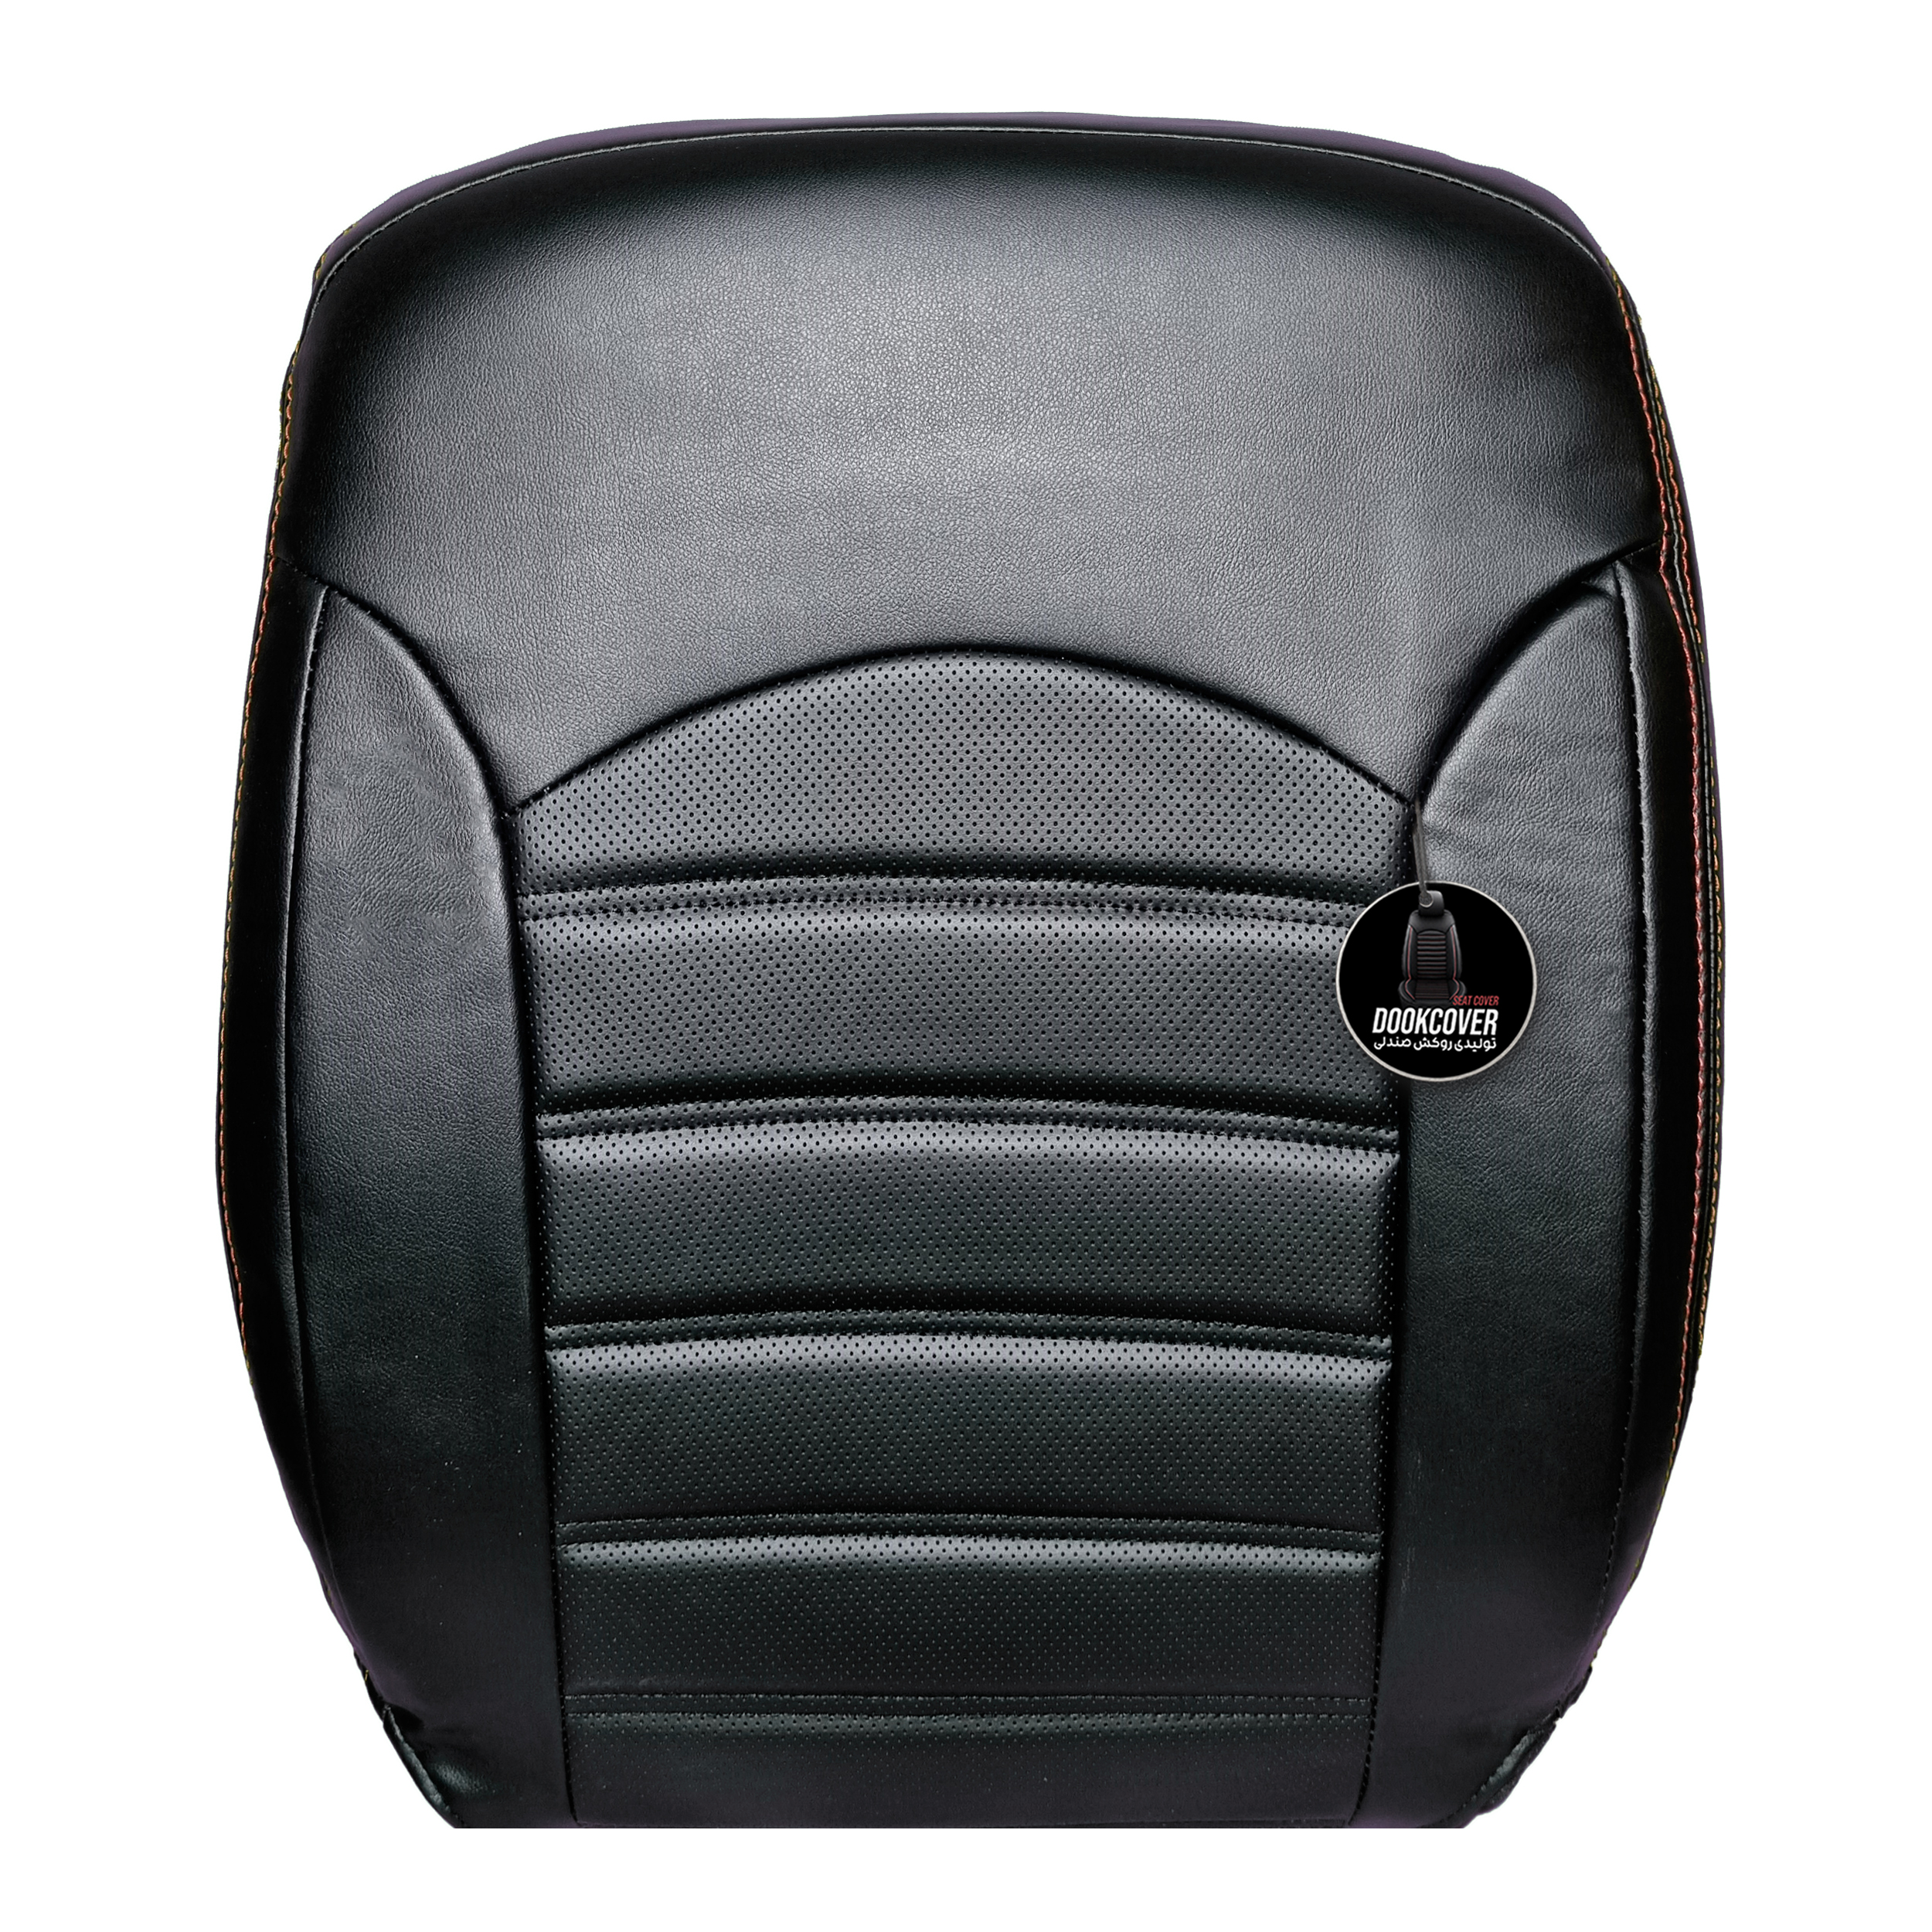 روکش صندلی خودرو دوک کاور کد 101209 مناسب برای 206